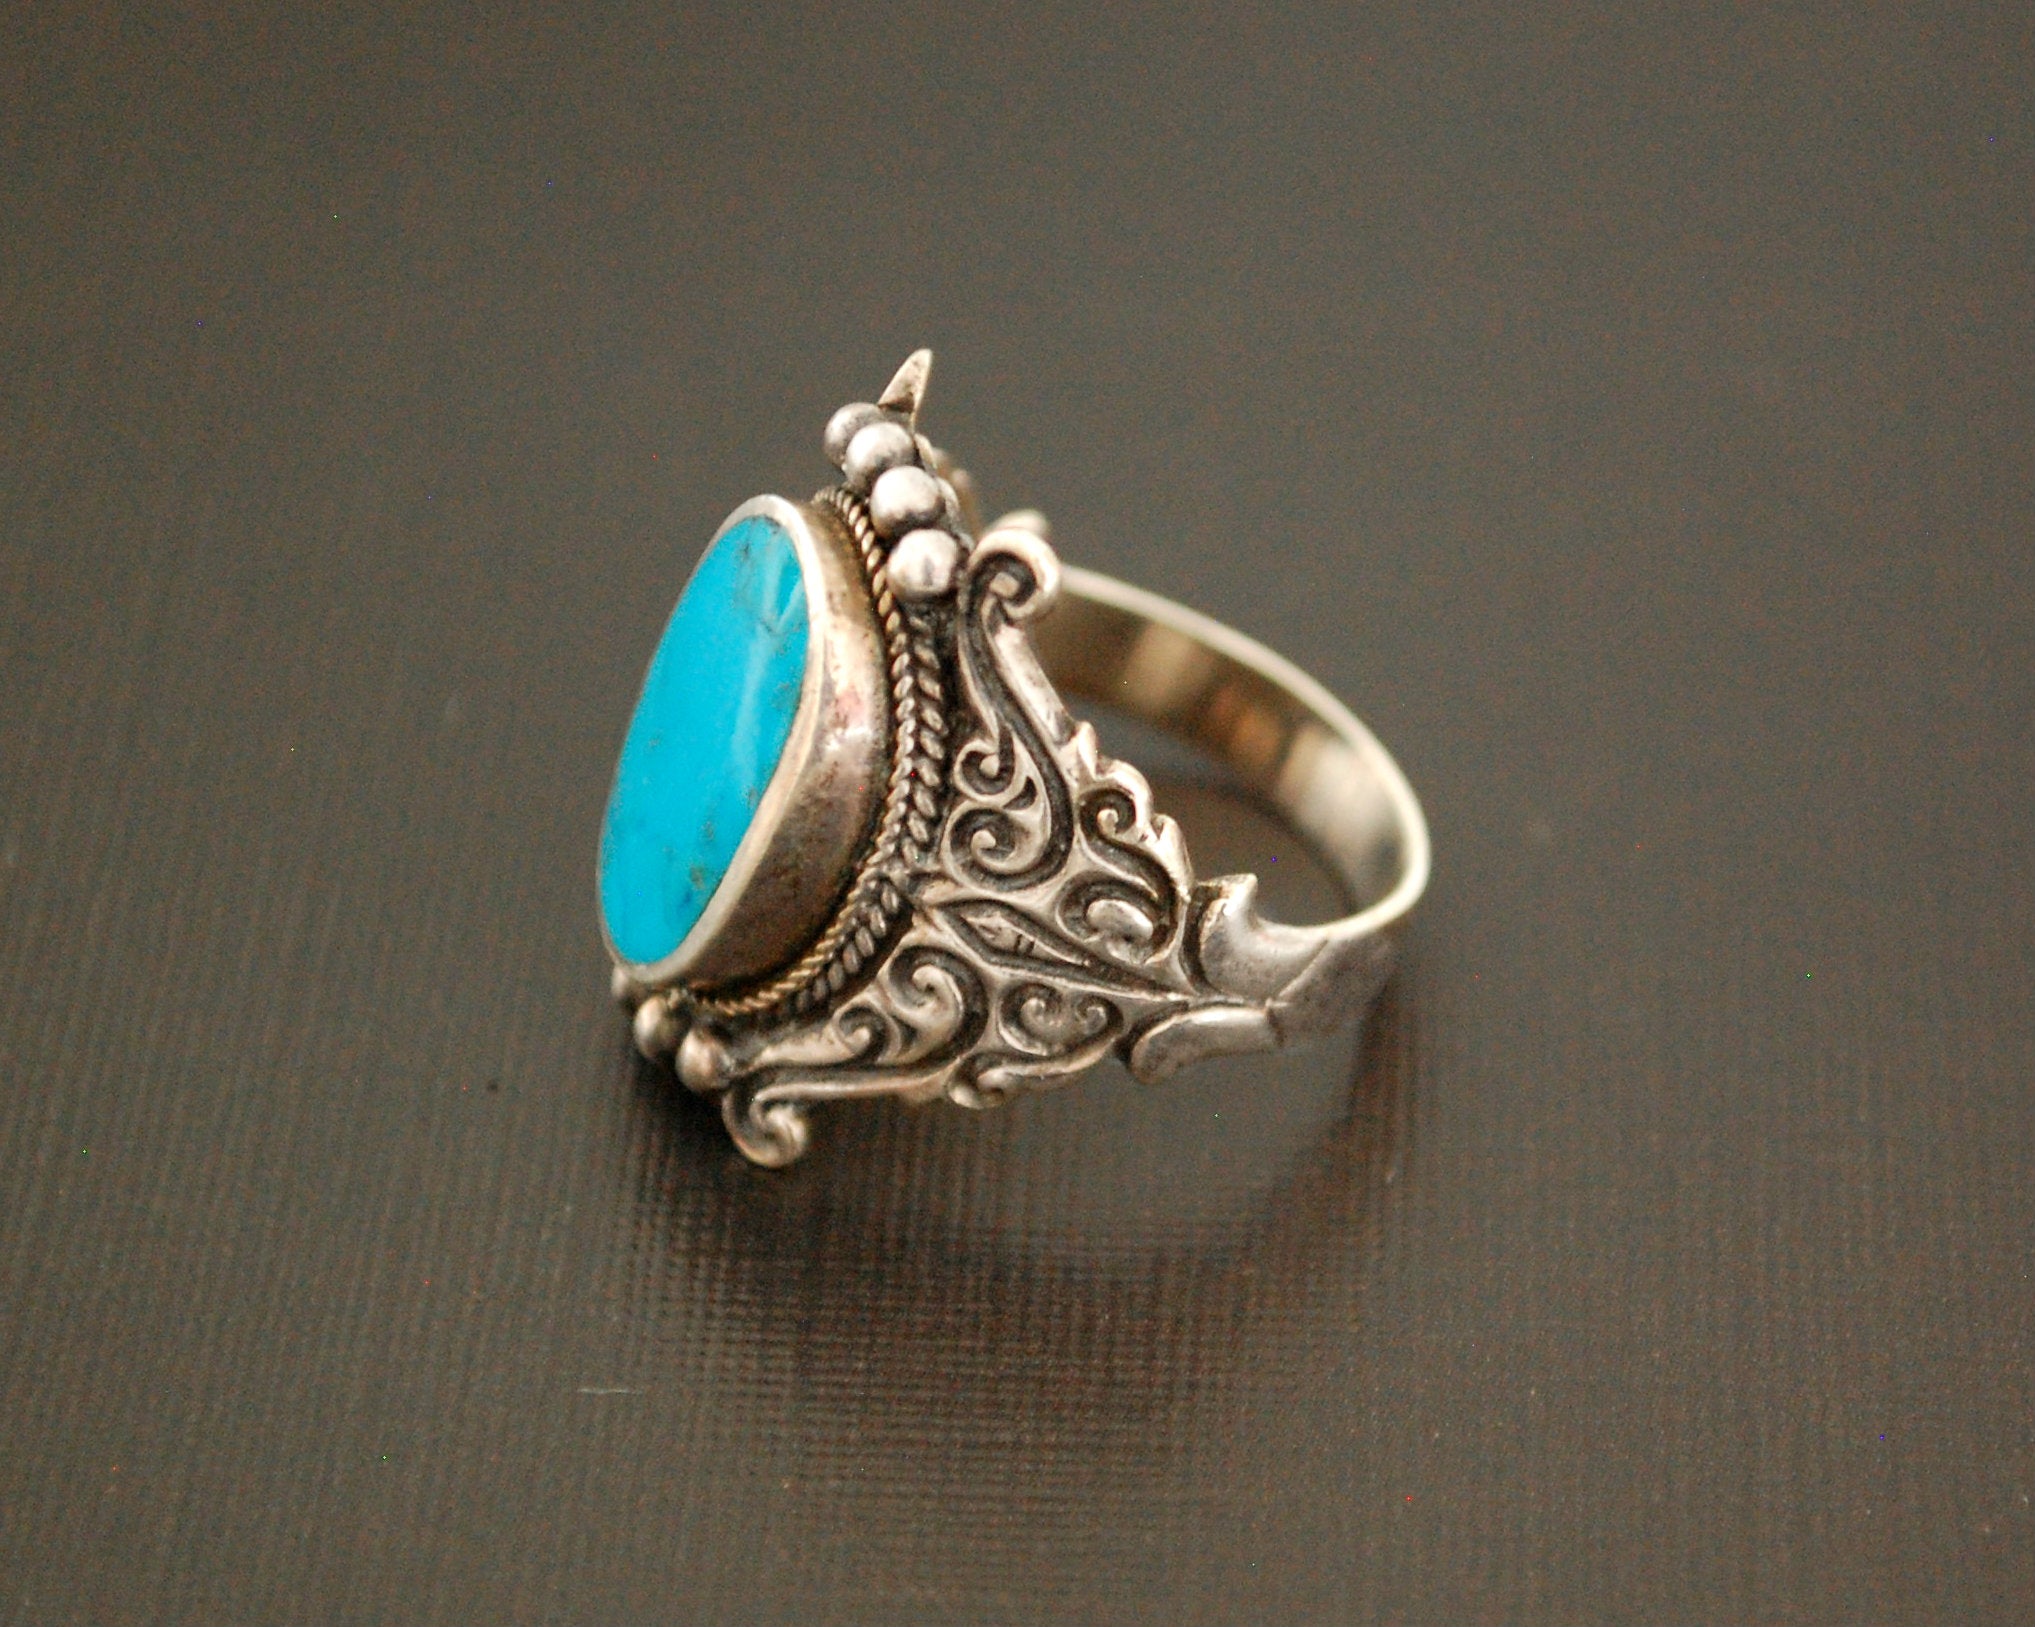 Nepali Turquoise Ring - Size 8